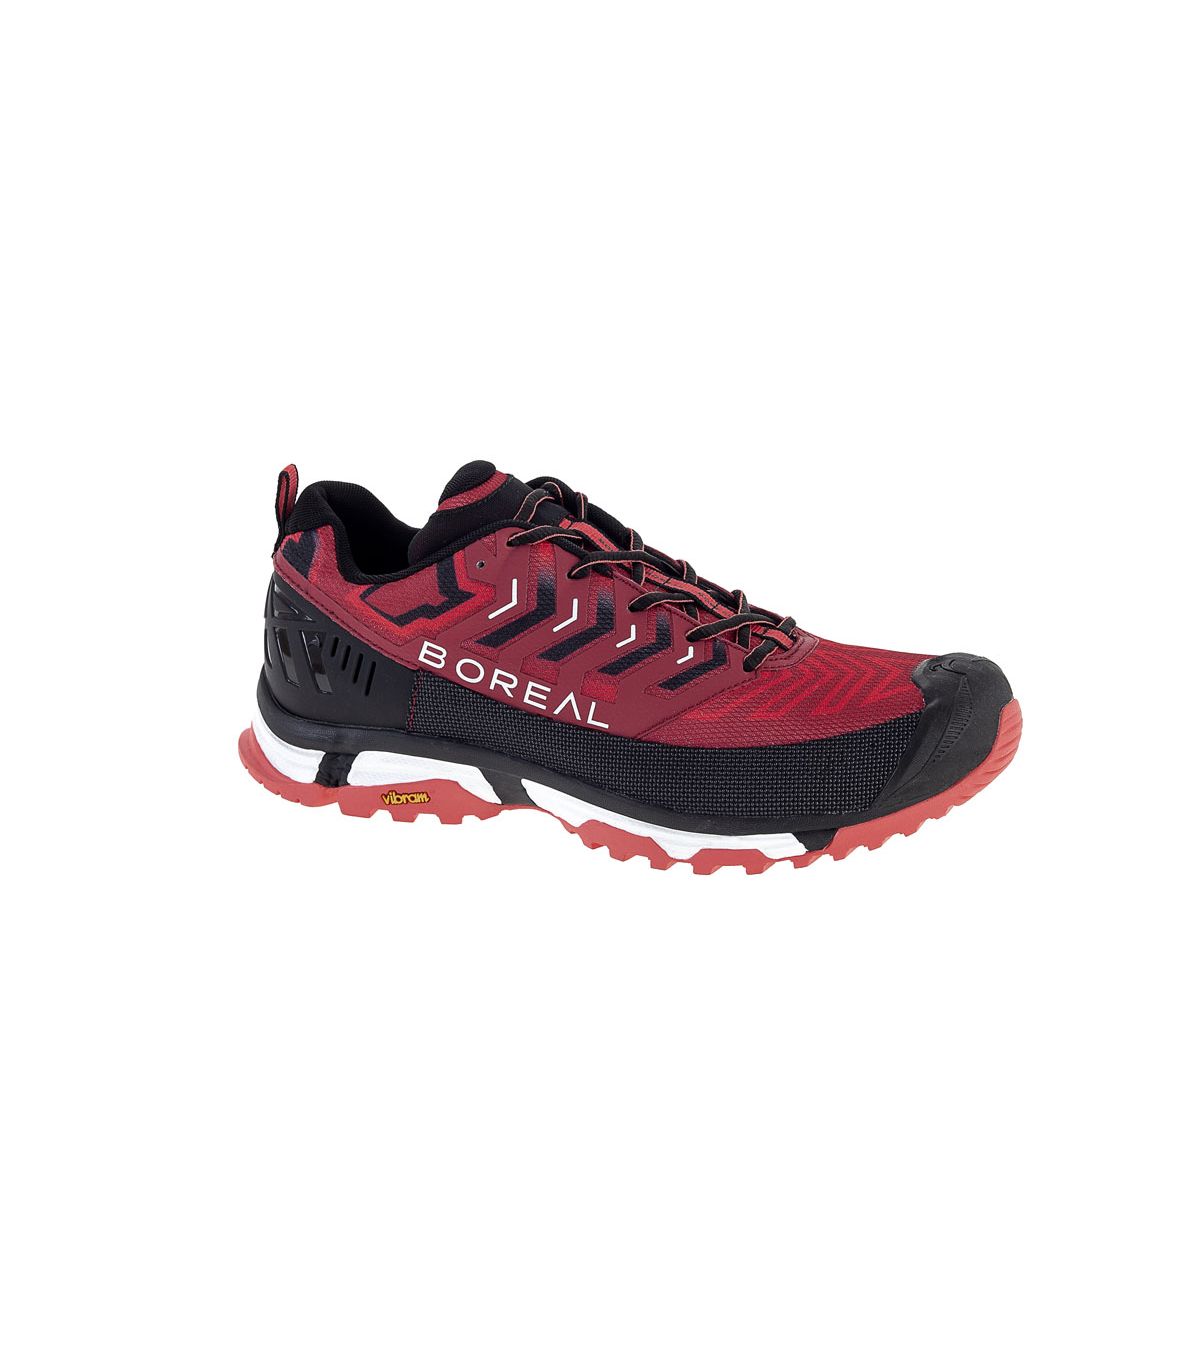 Zapatillas Boreal RED-BLACK. Oferta y Comprar online